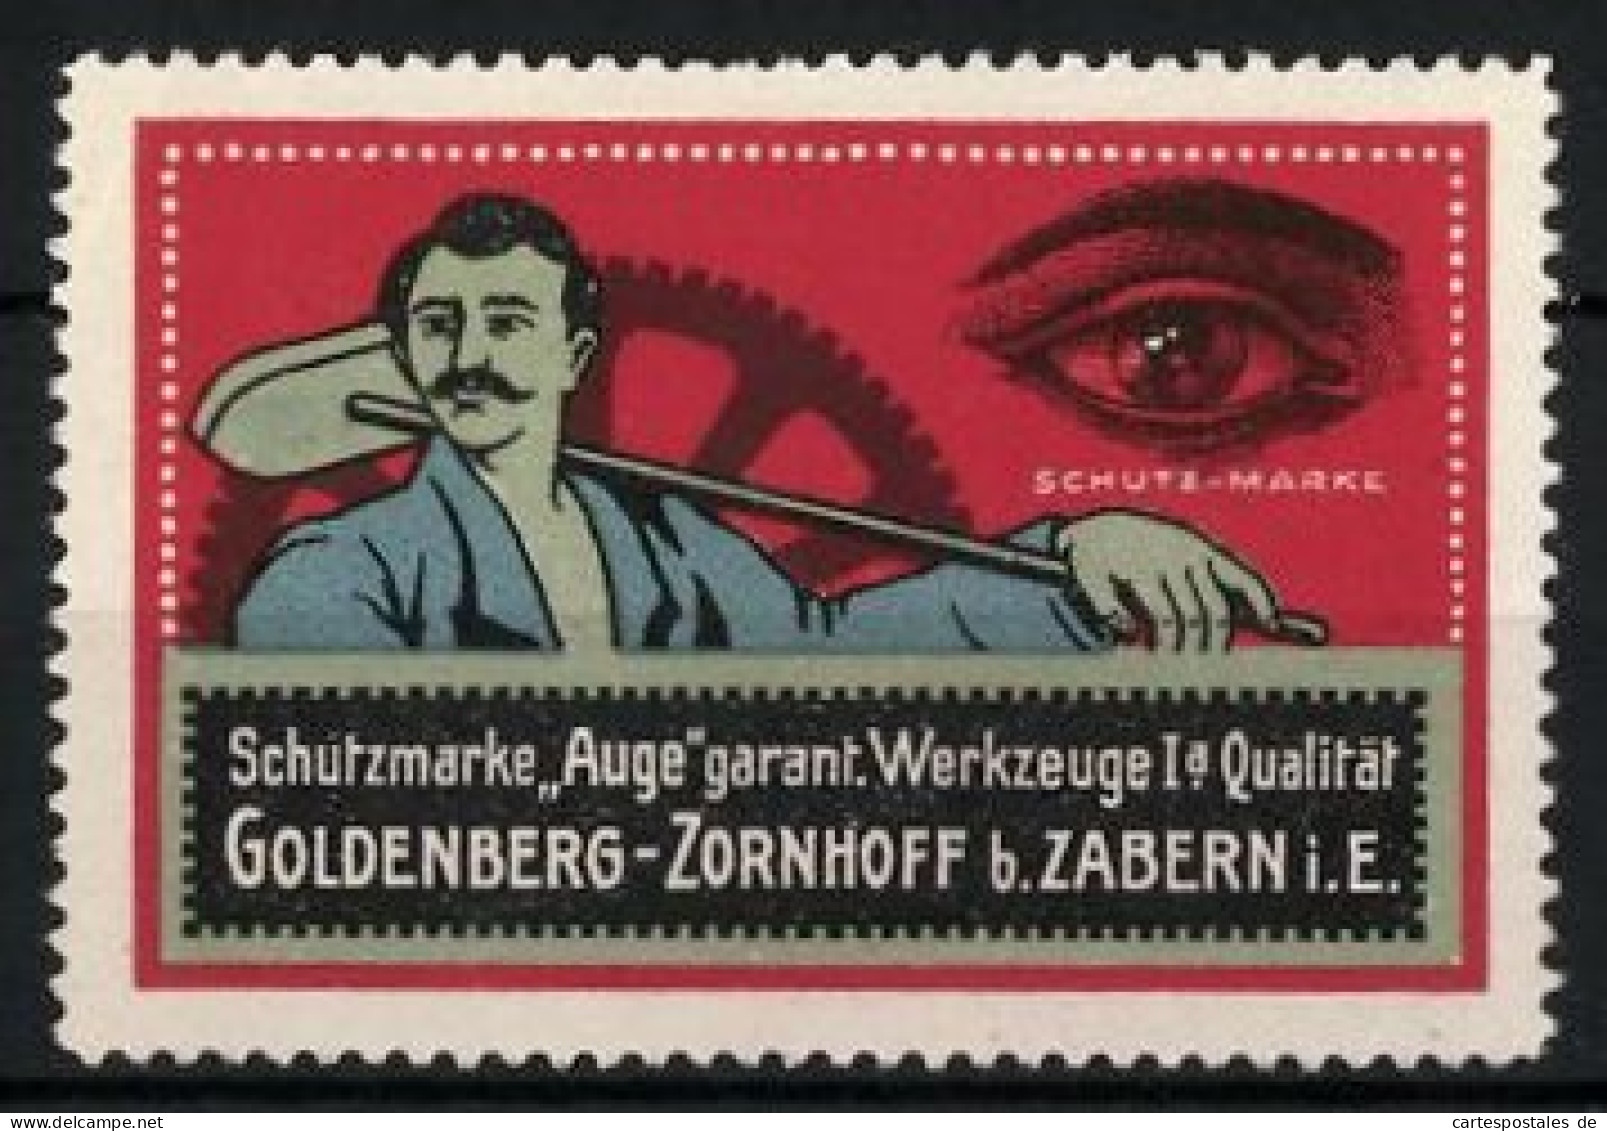 Reklamemarke Werkzeugfabrik Goldenberg-Zornhoff, Zabern I. E., Schutzmarke Auge, Werkzeuge Mit Qualität  - Erinnophilie